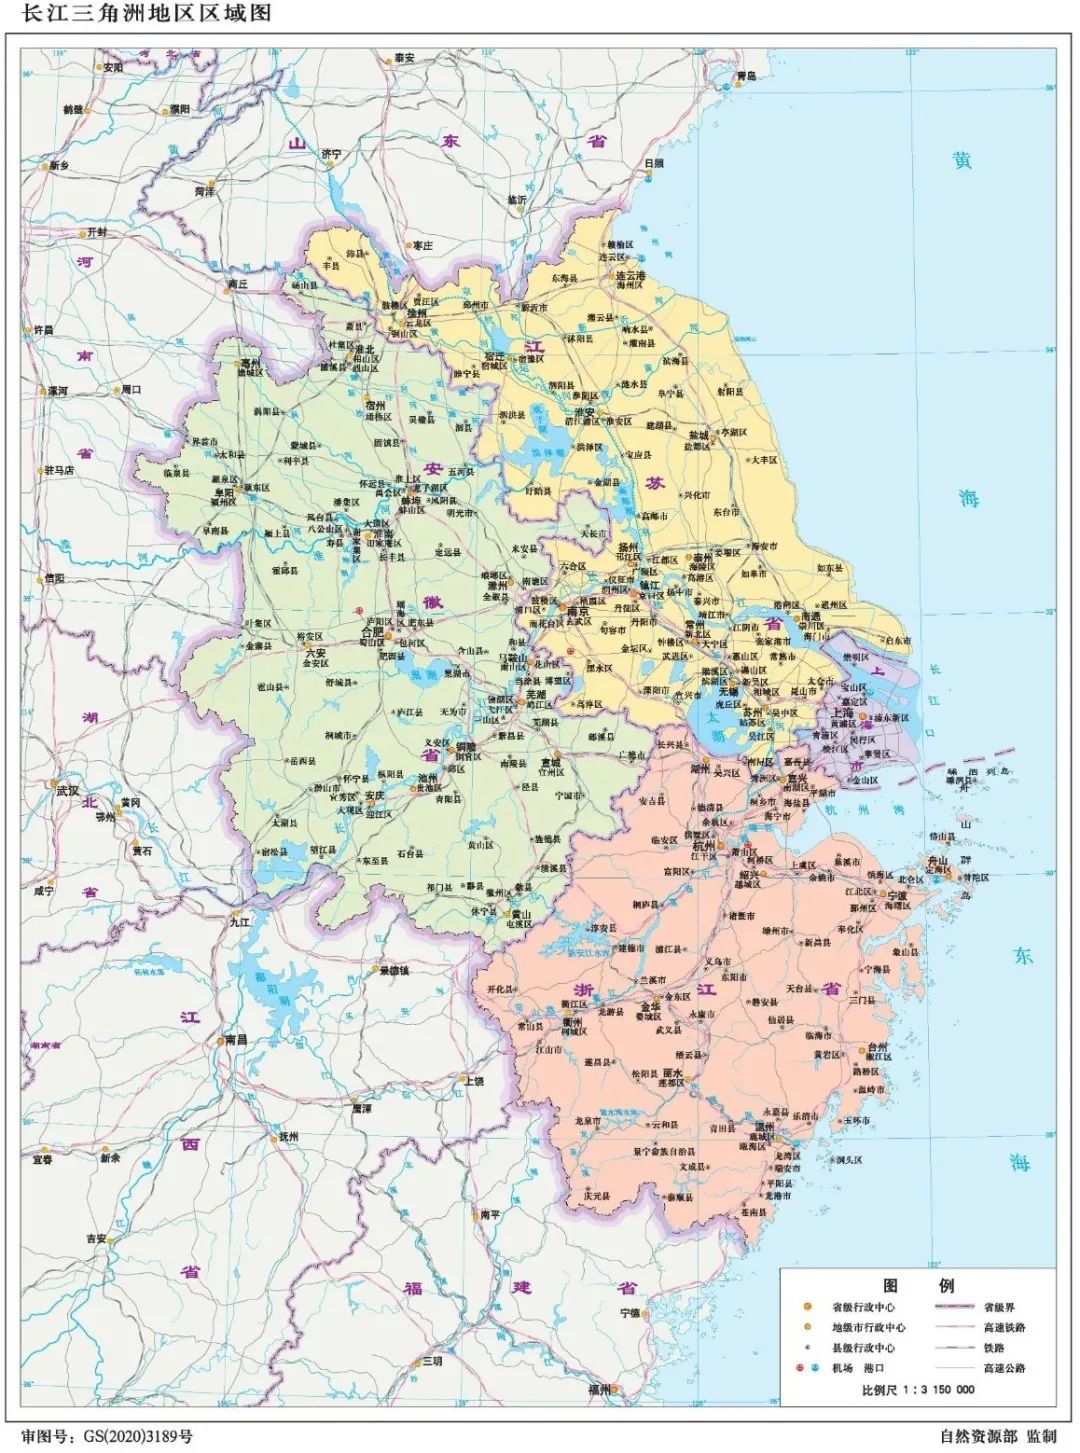 内容详情长江三角洲地区区域图,满足涉及长三角一体化发展战略的地图